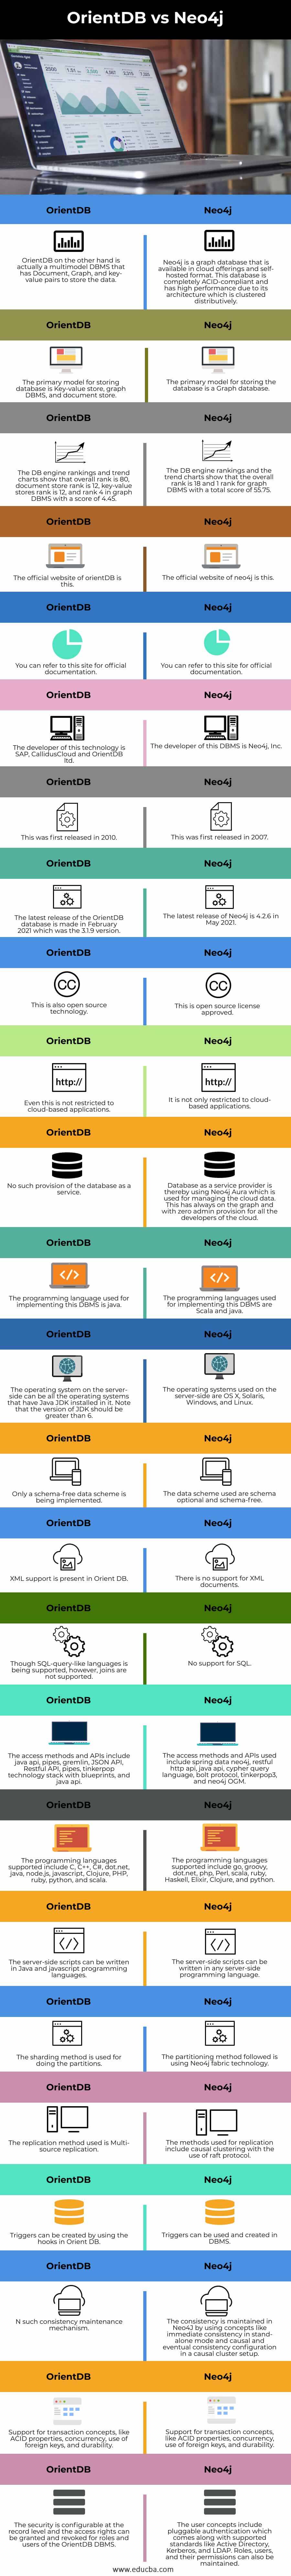 OrientDB-vs-Neo4j-info